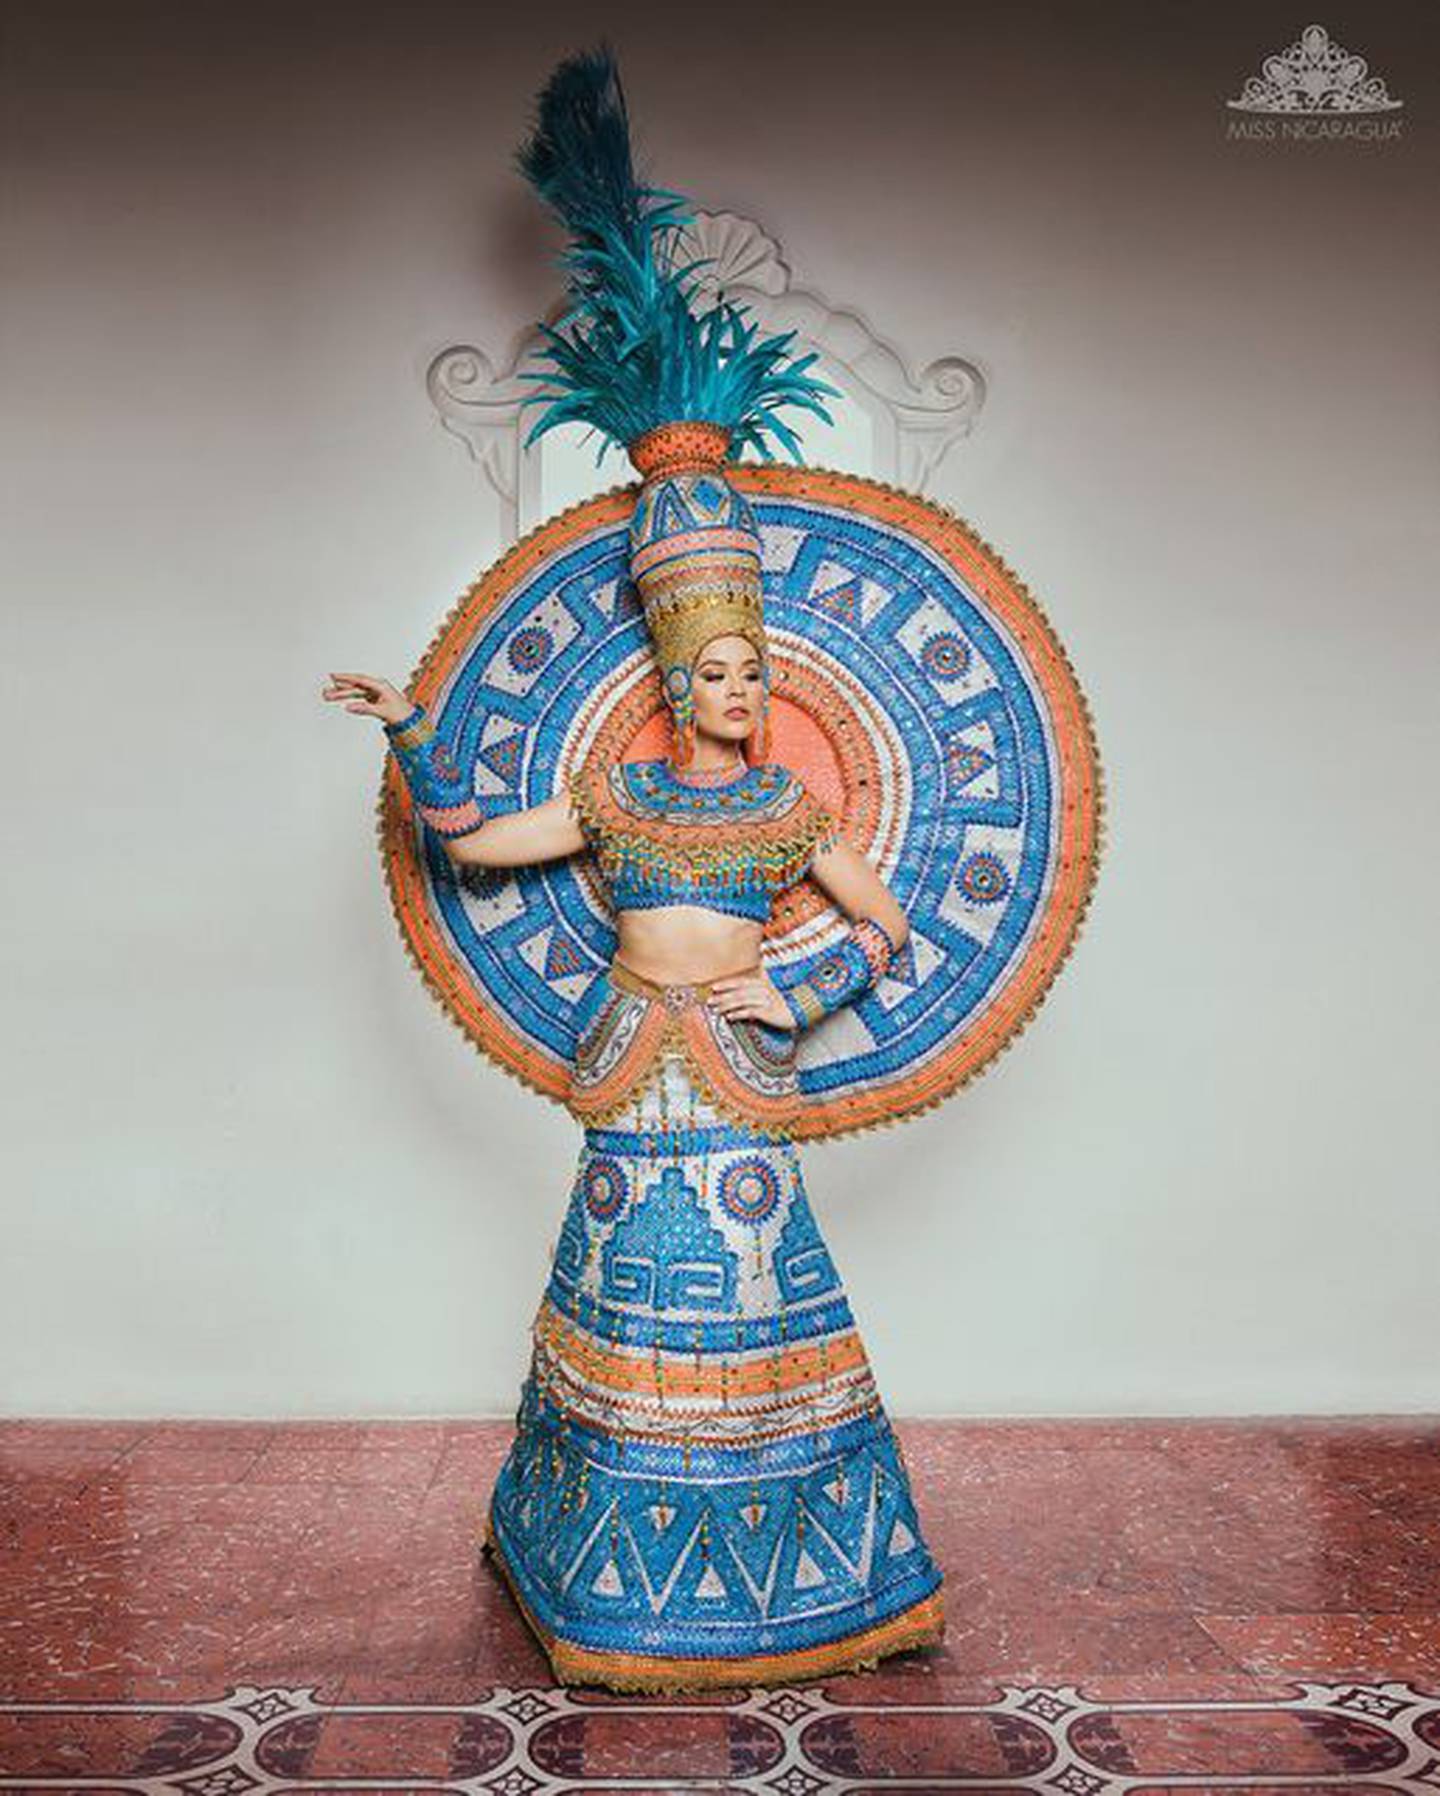 “Cerámica precolombina orgullo de nuestra identidad nacional”. La candidata Allison Wassmers, de Managua, modela un diseño de Caerlos Nicaragua, inspirado en el artista de la cerámica, Gregorio Bracamonte, artesano de San Juan de Oriente.